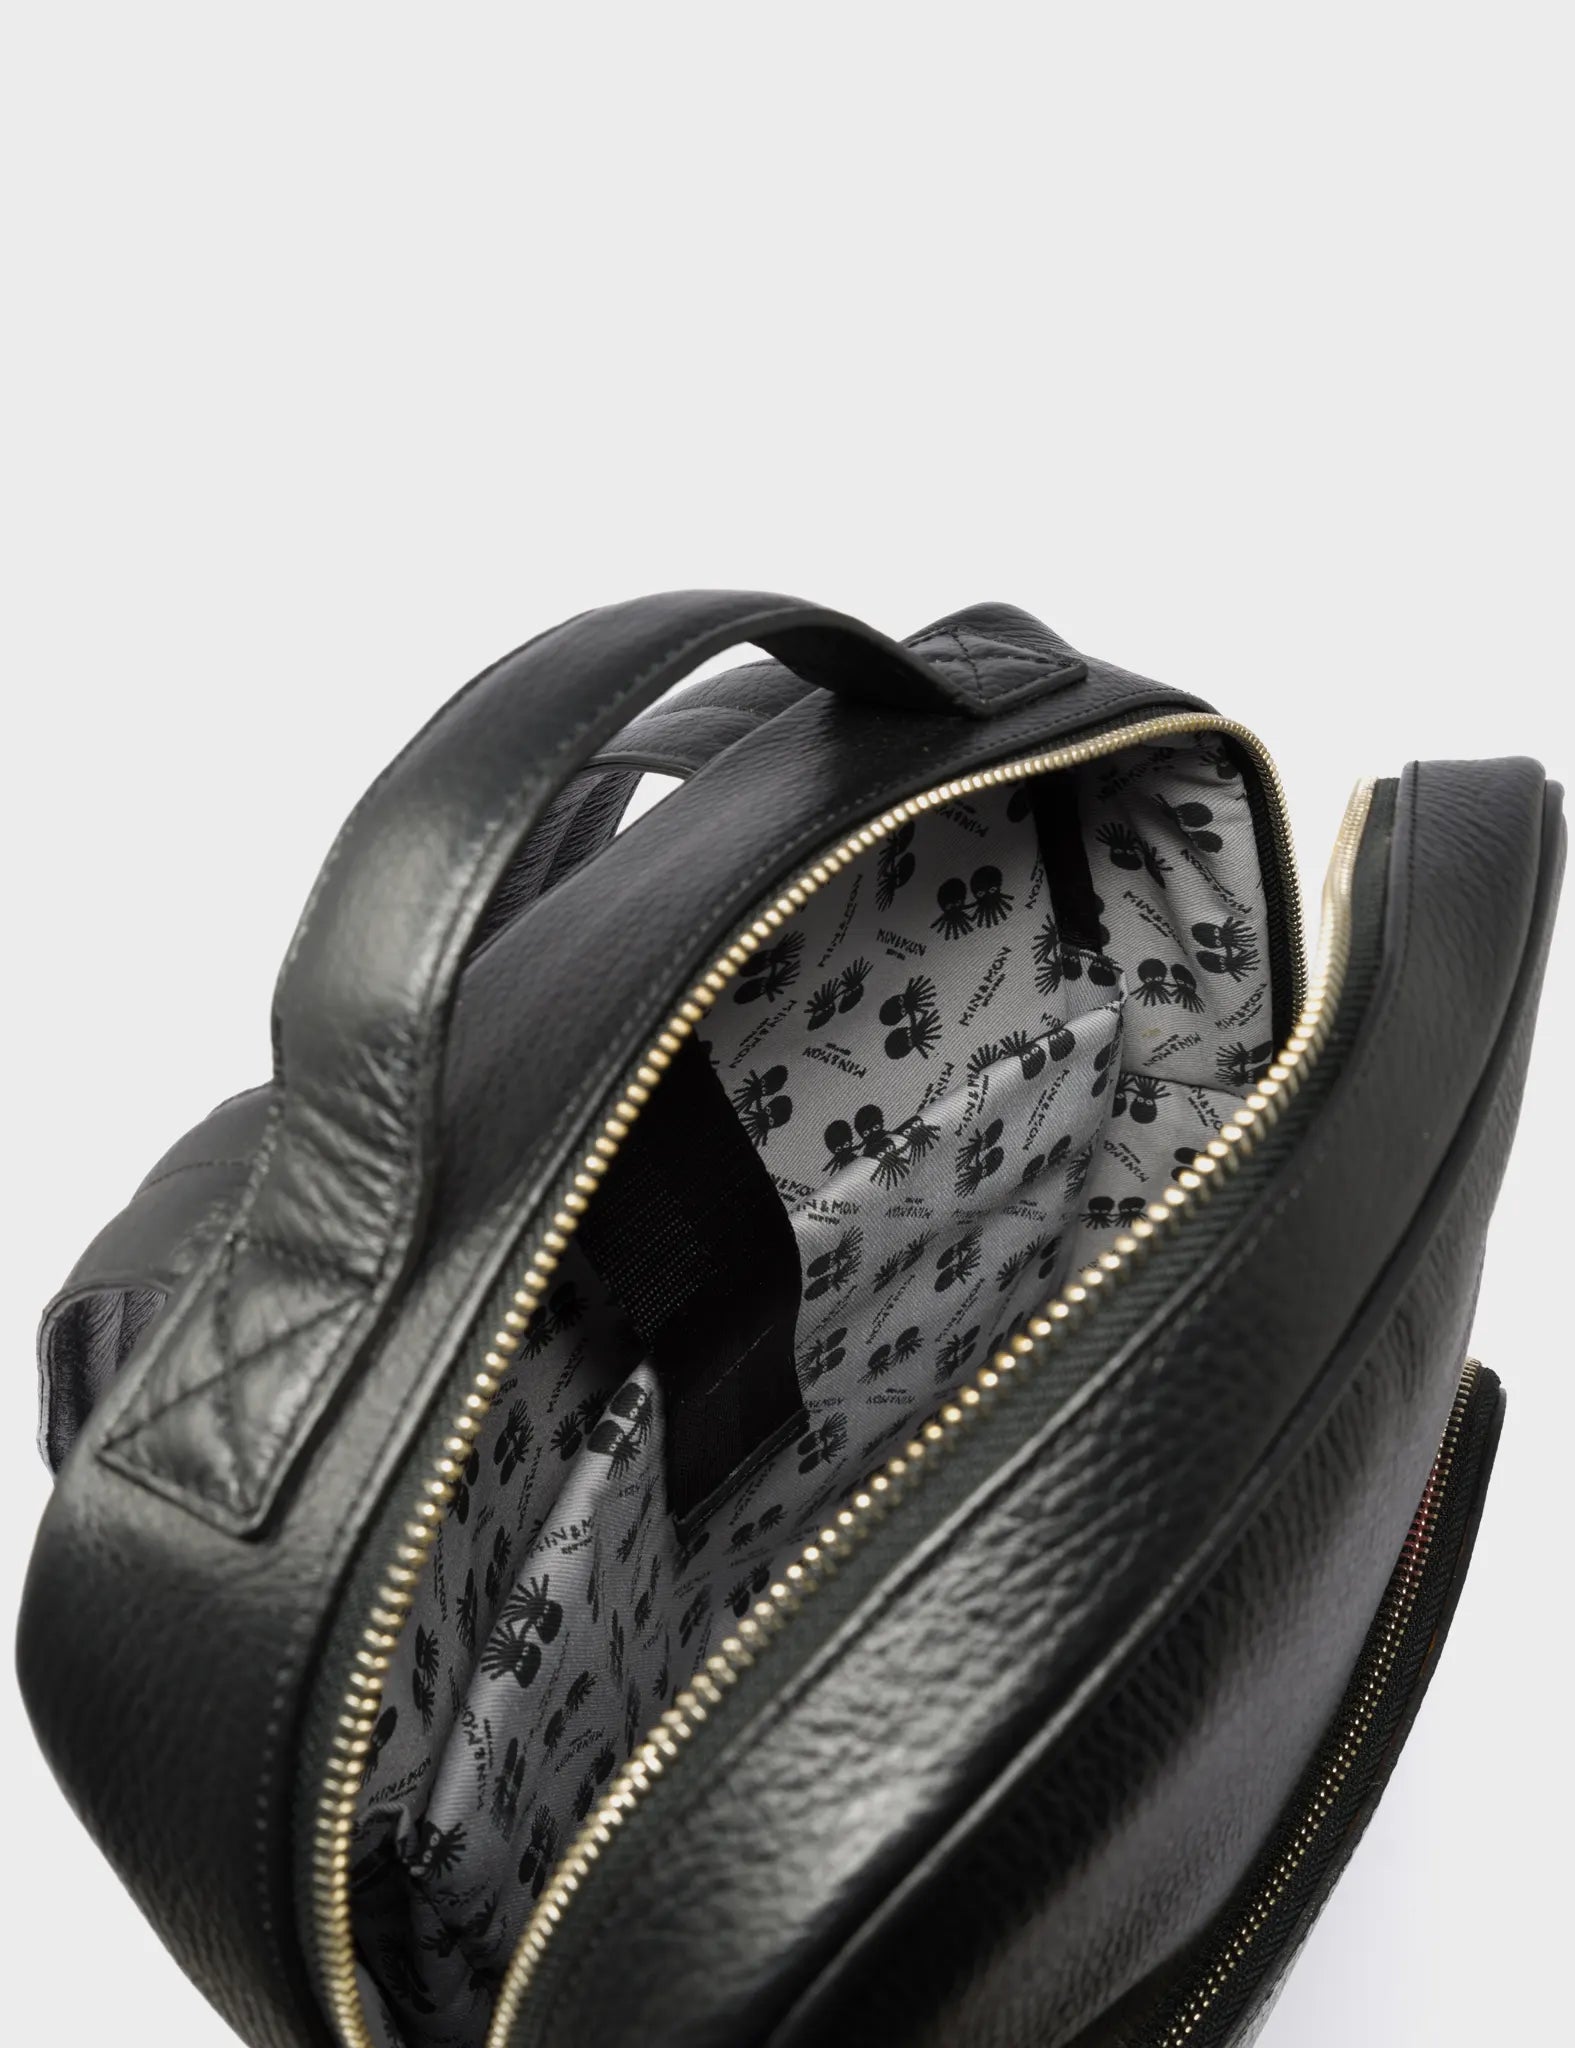 Black Leather Backpack Medium - Tiger and Snake Print - Inside pocket 